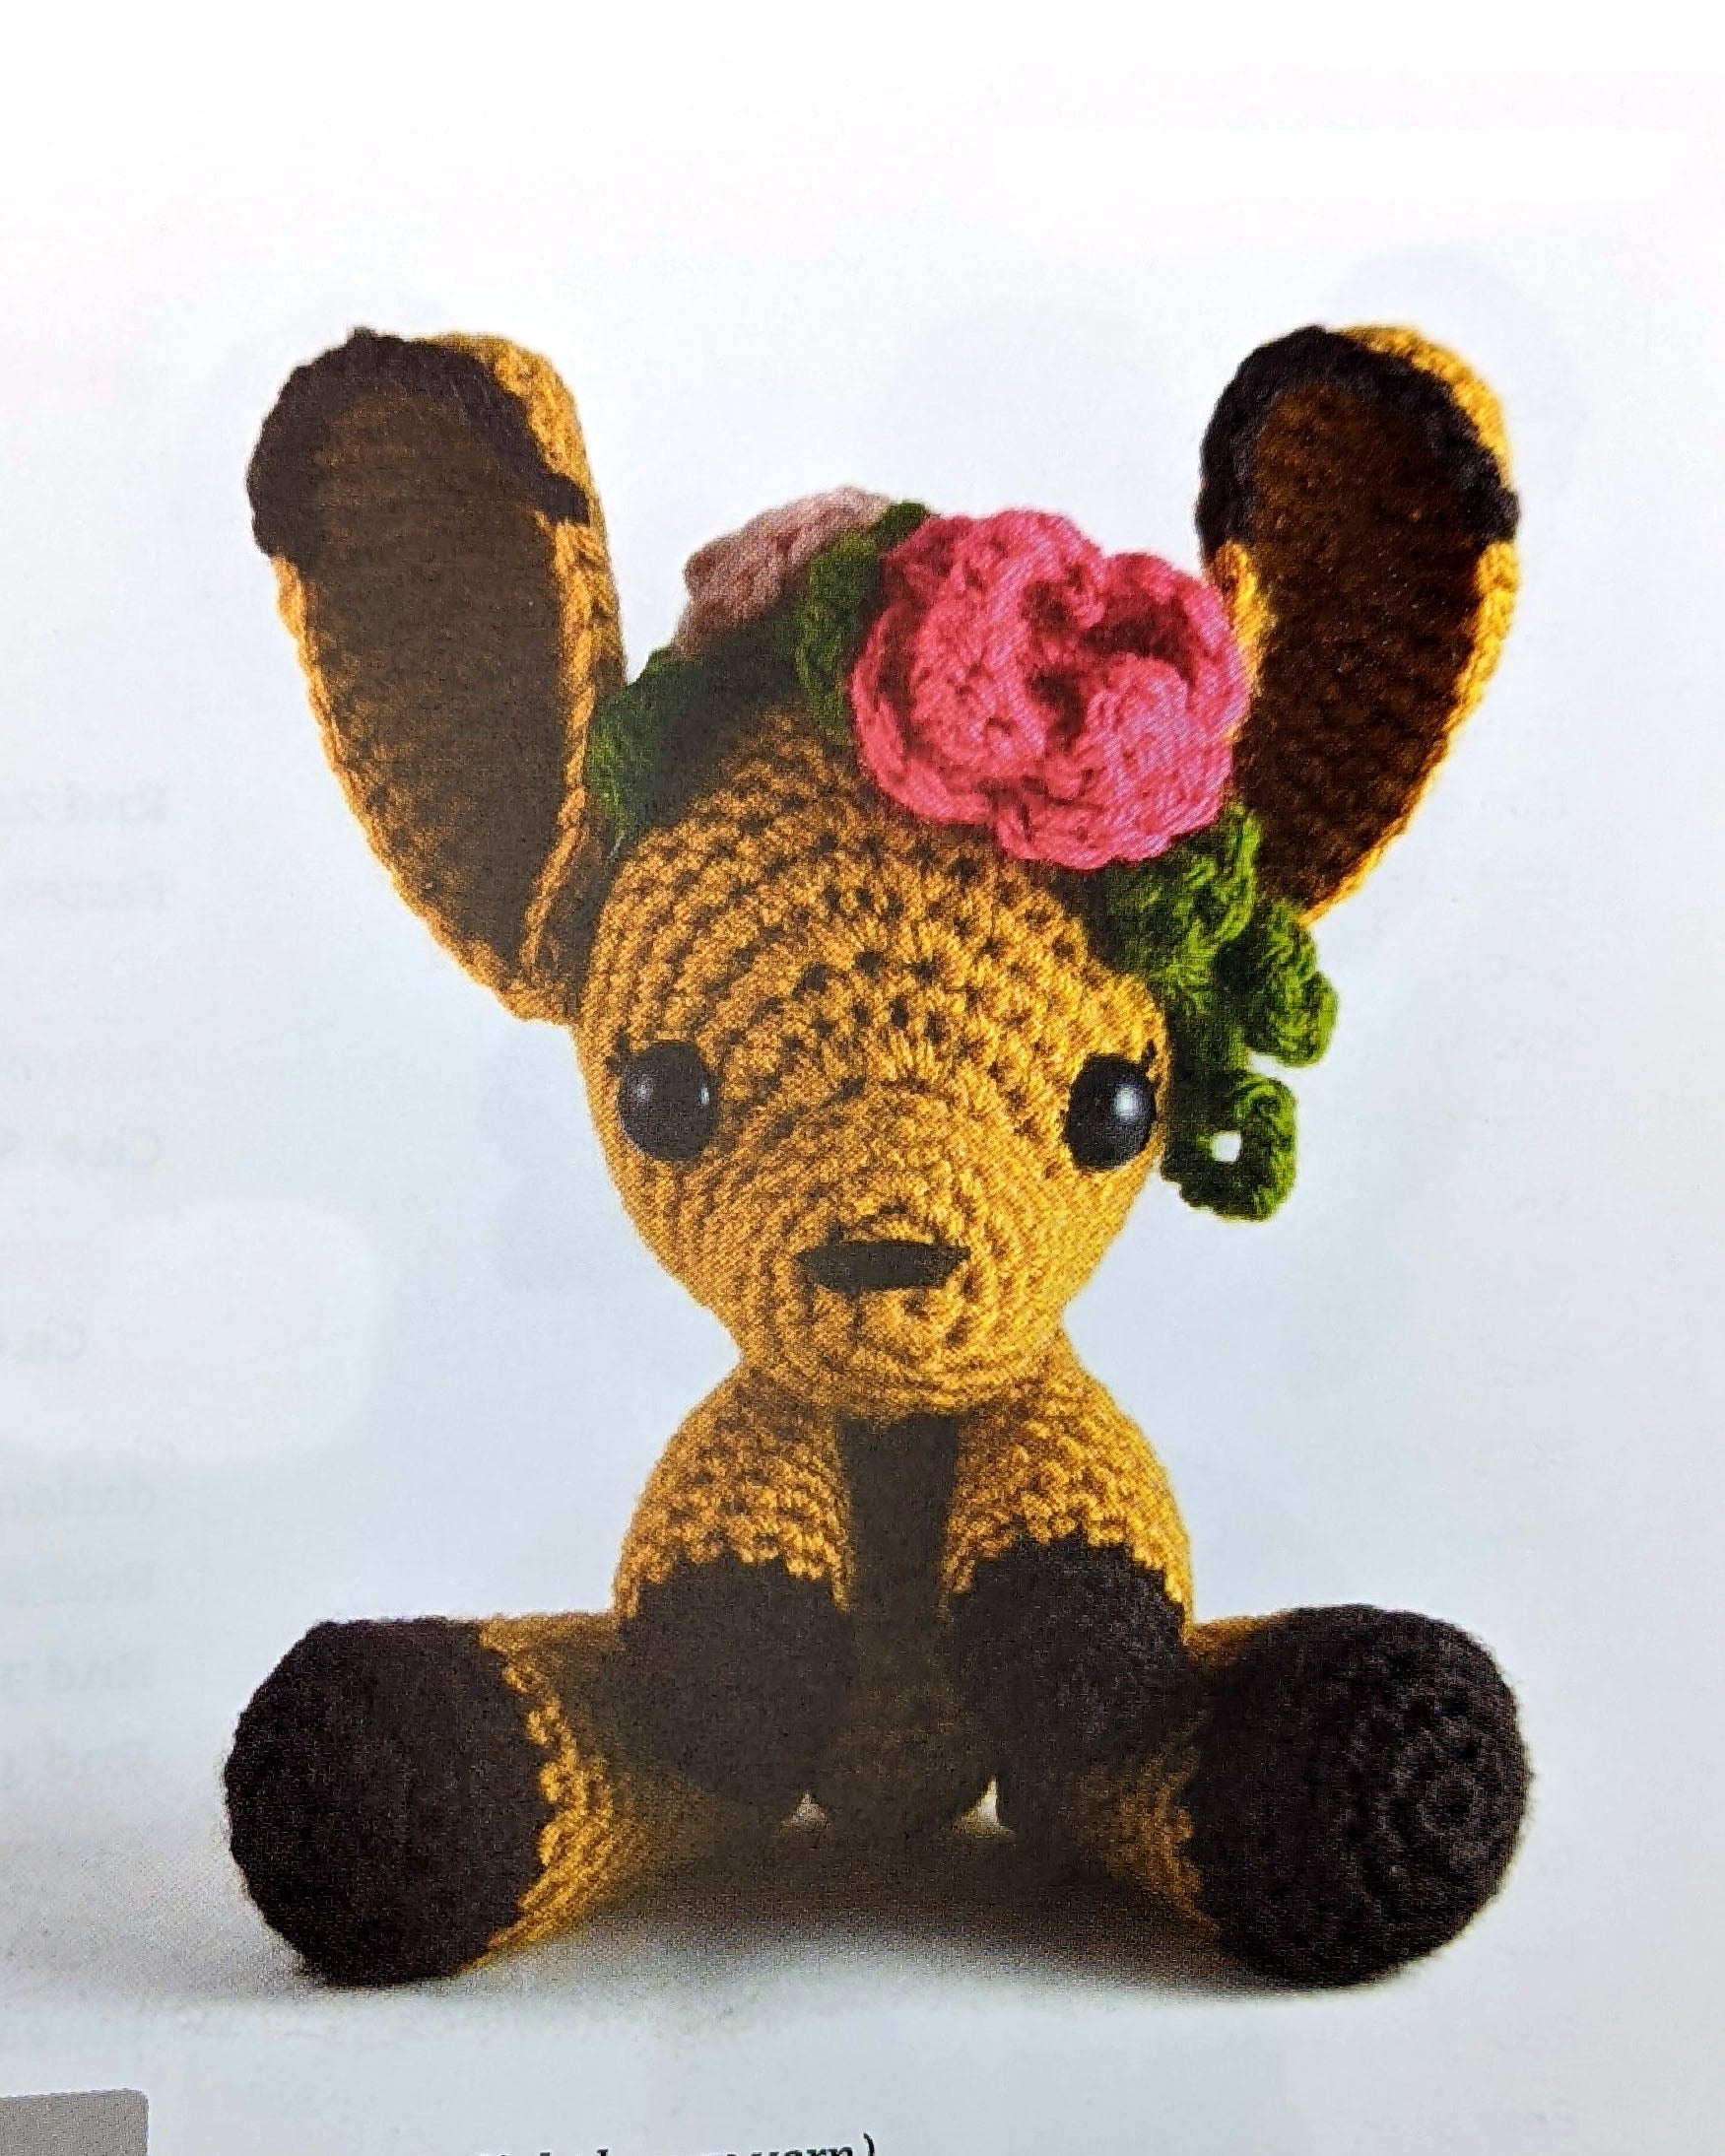 Zoomigurumi 5 15 Adorable Amigurumi Crochet Patterns in This PDF Book 